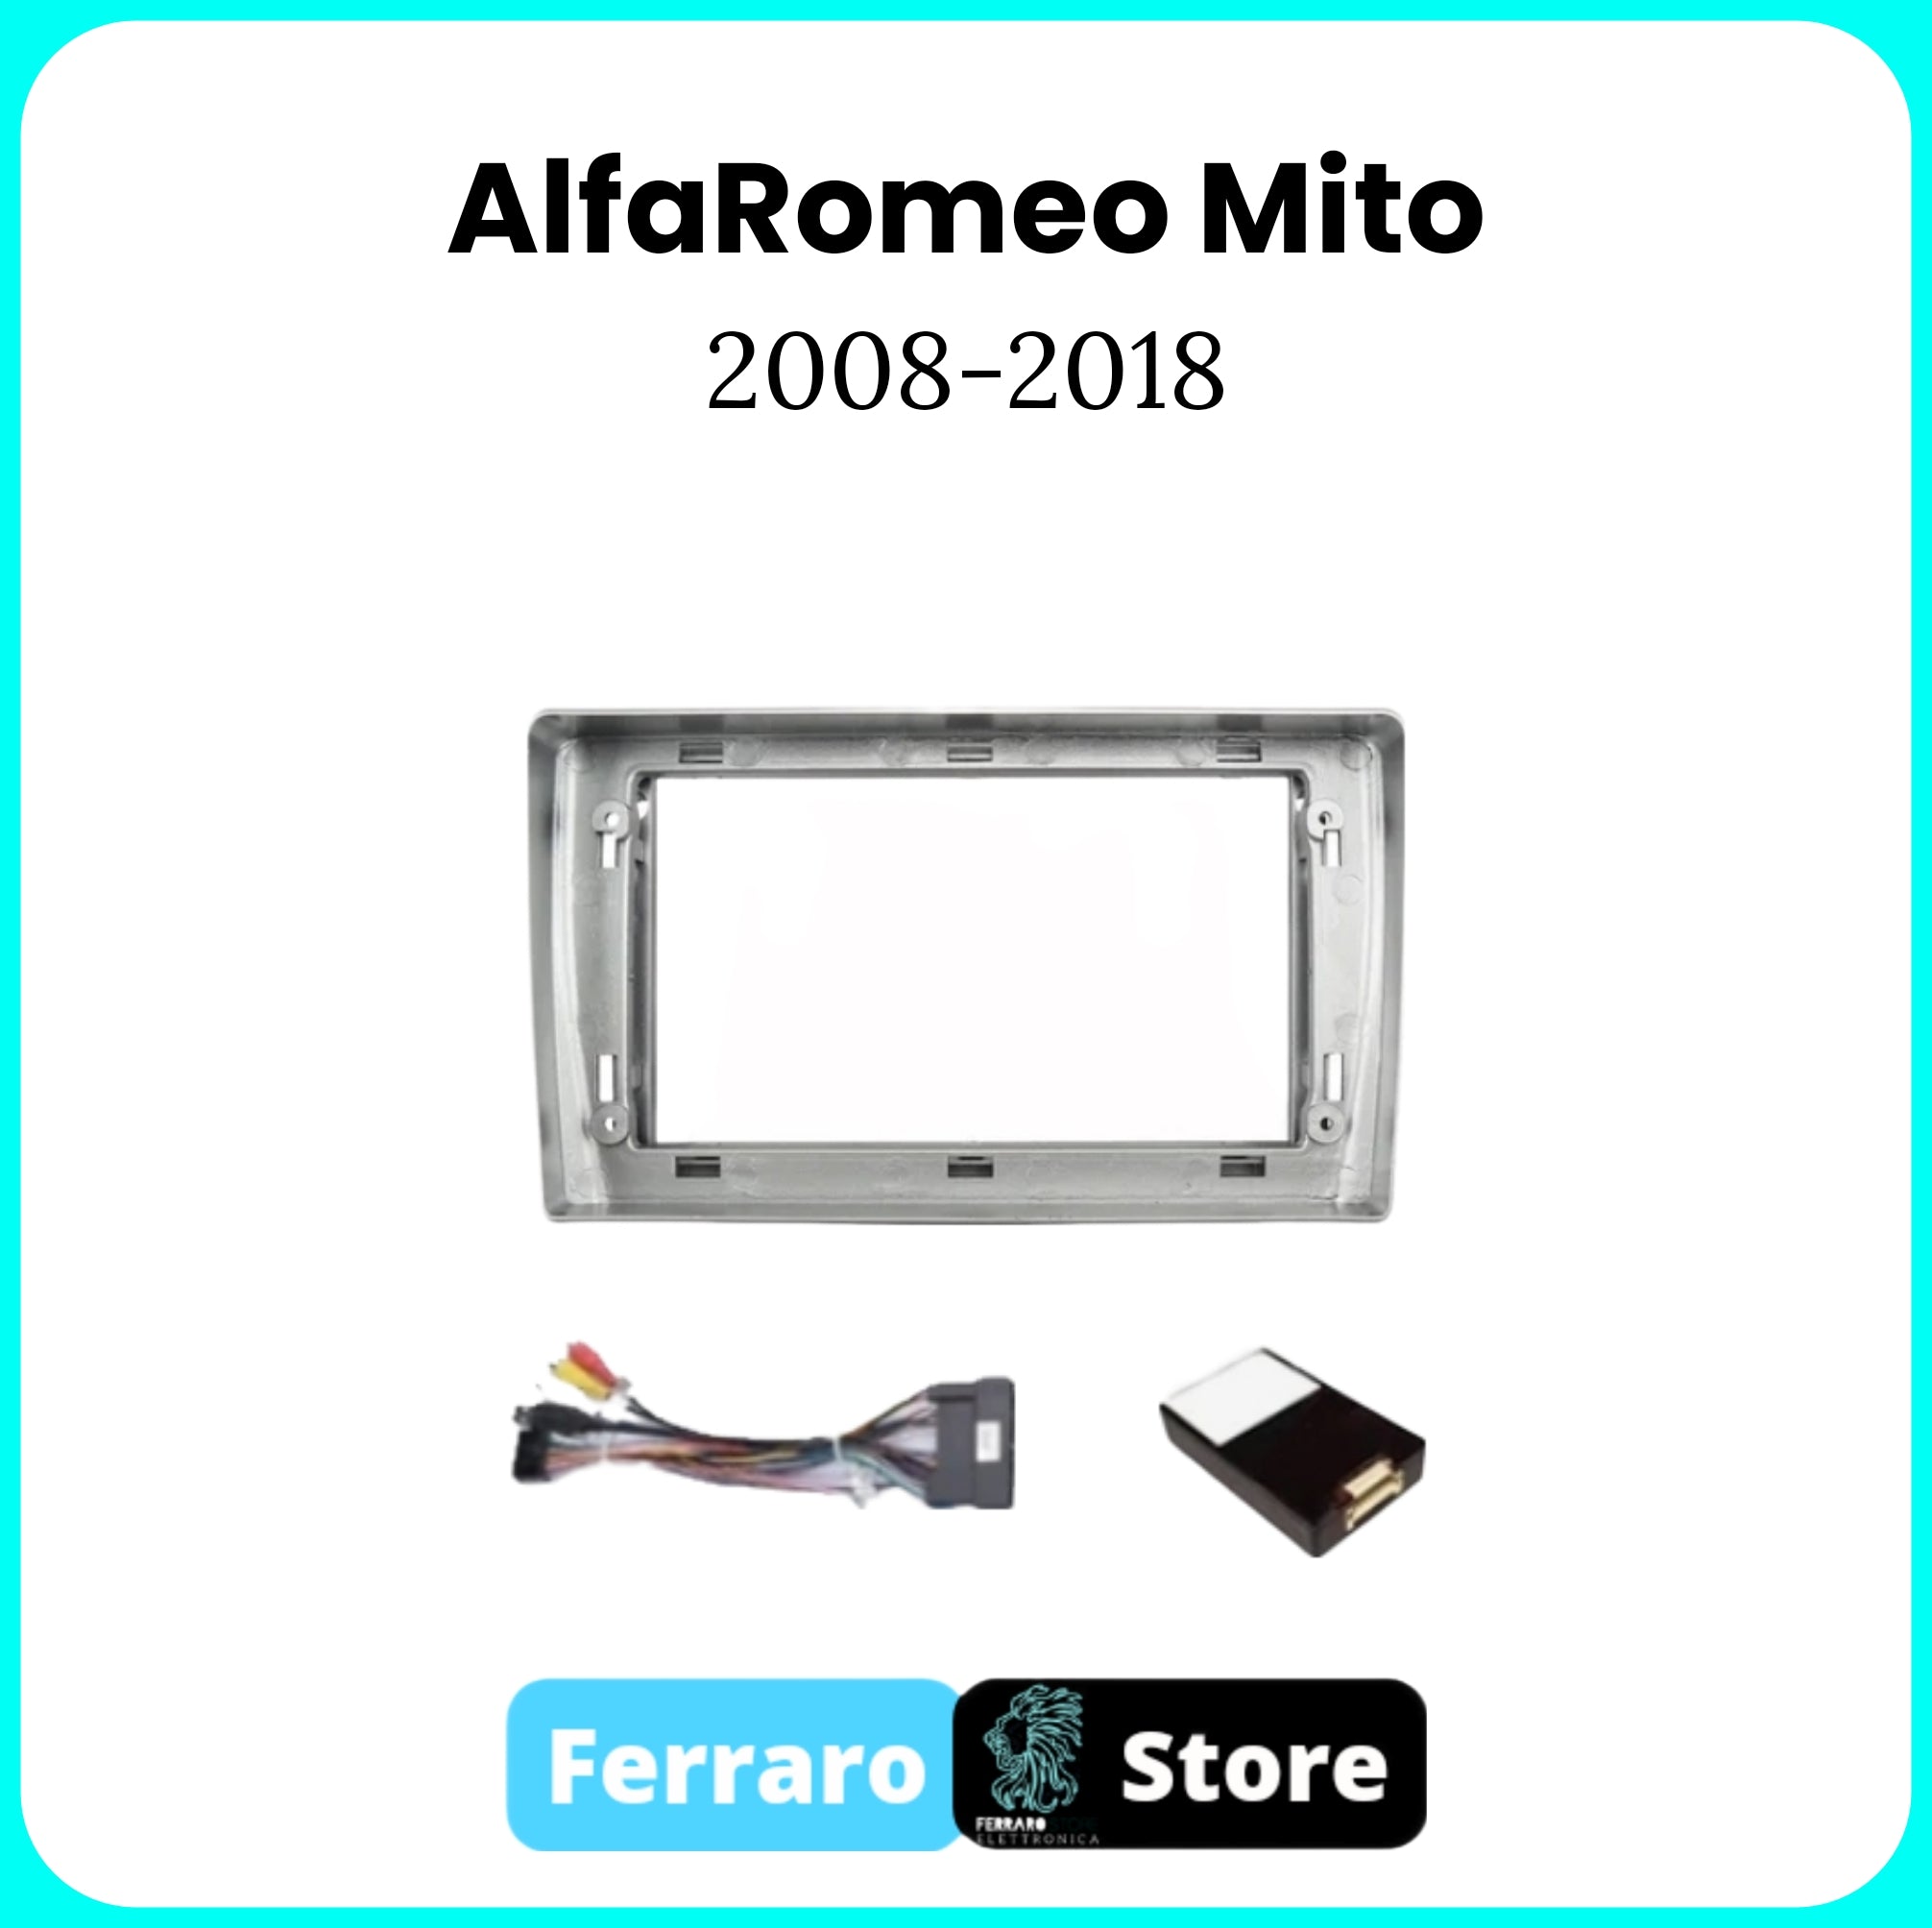 Kit Montaggio Autoradio 9"Pollici AlfaRomeo Mito [2008-2018] - Mascherina, Cablaggio Autoradio Android